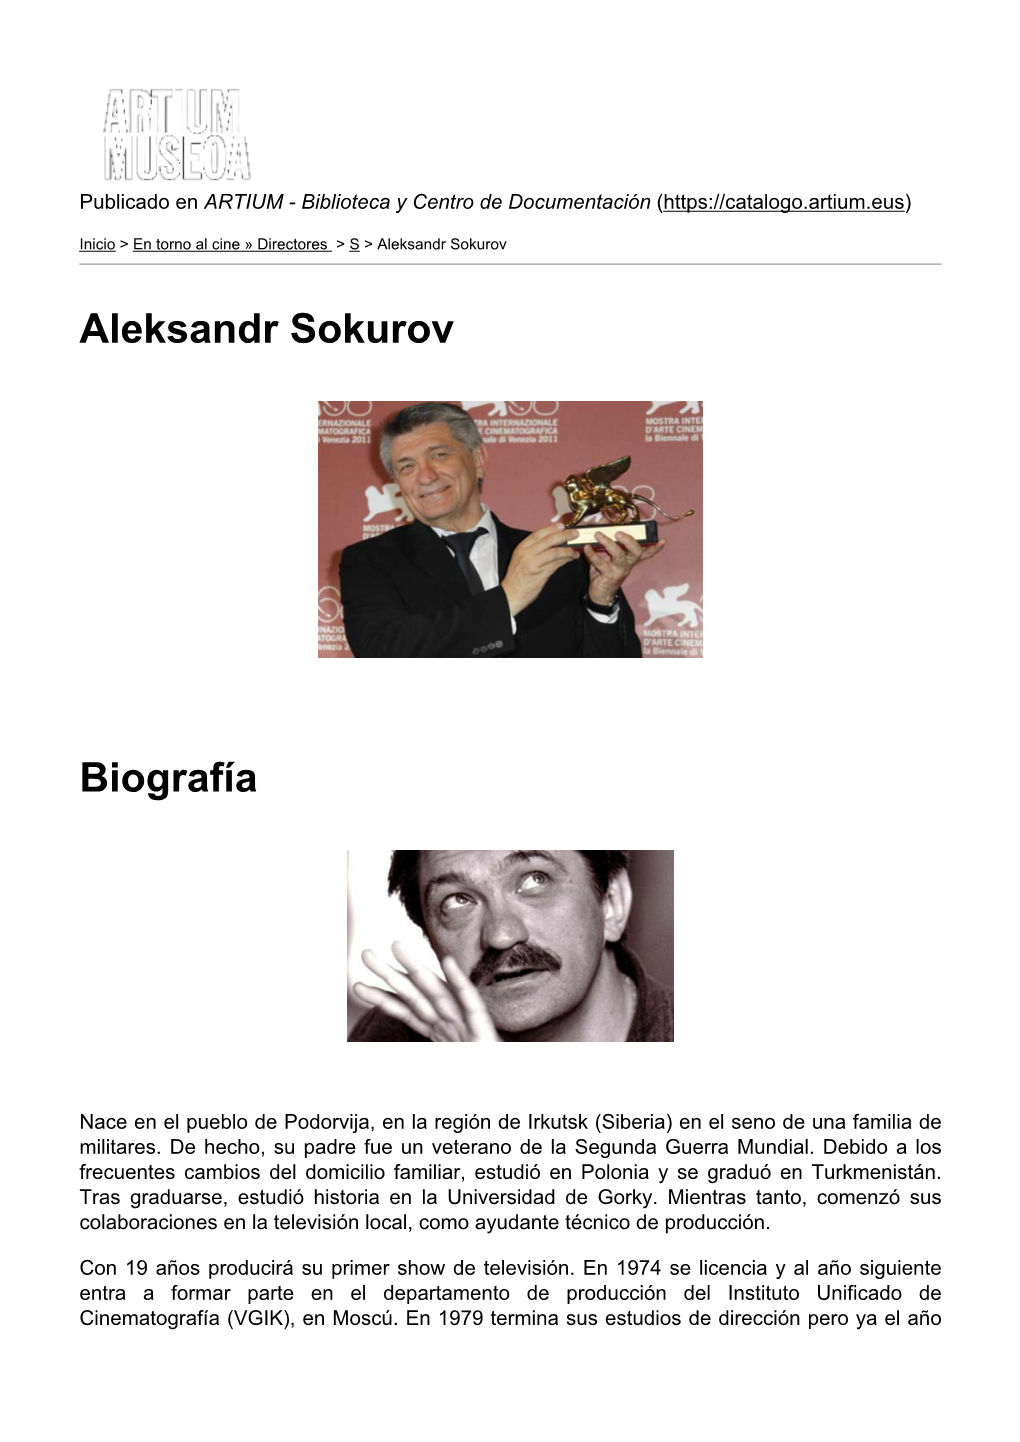 Aleksandr Sokurov Biografía